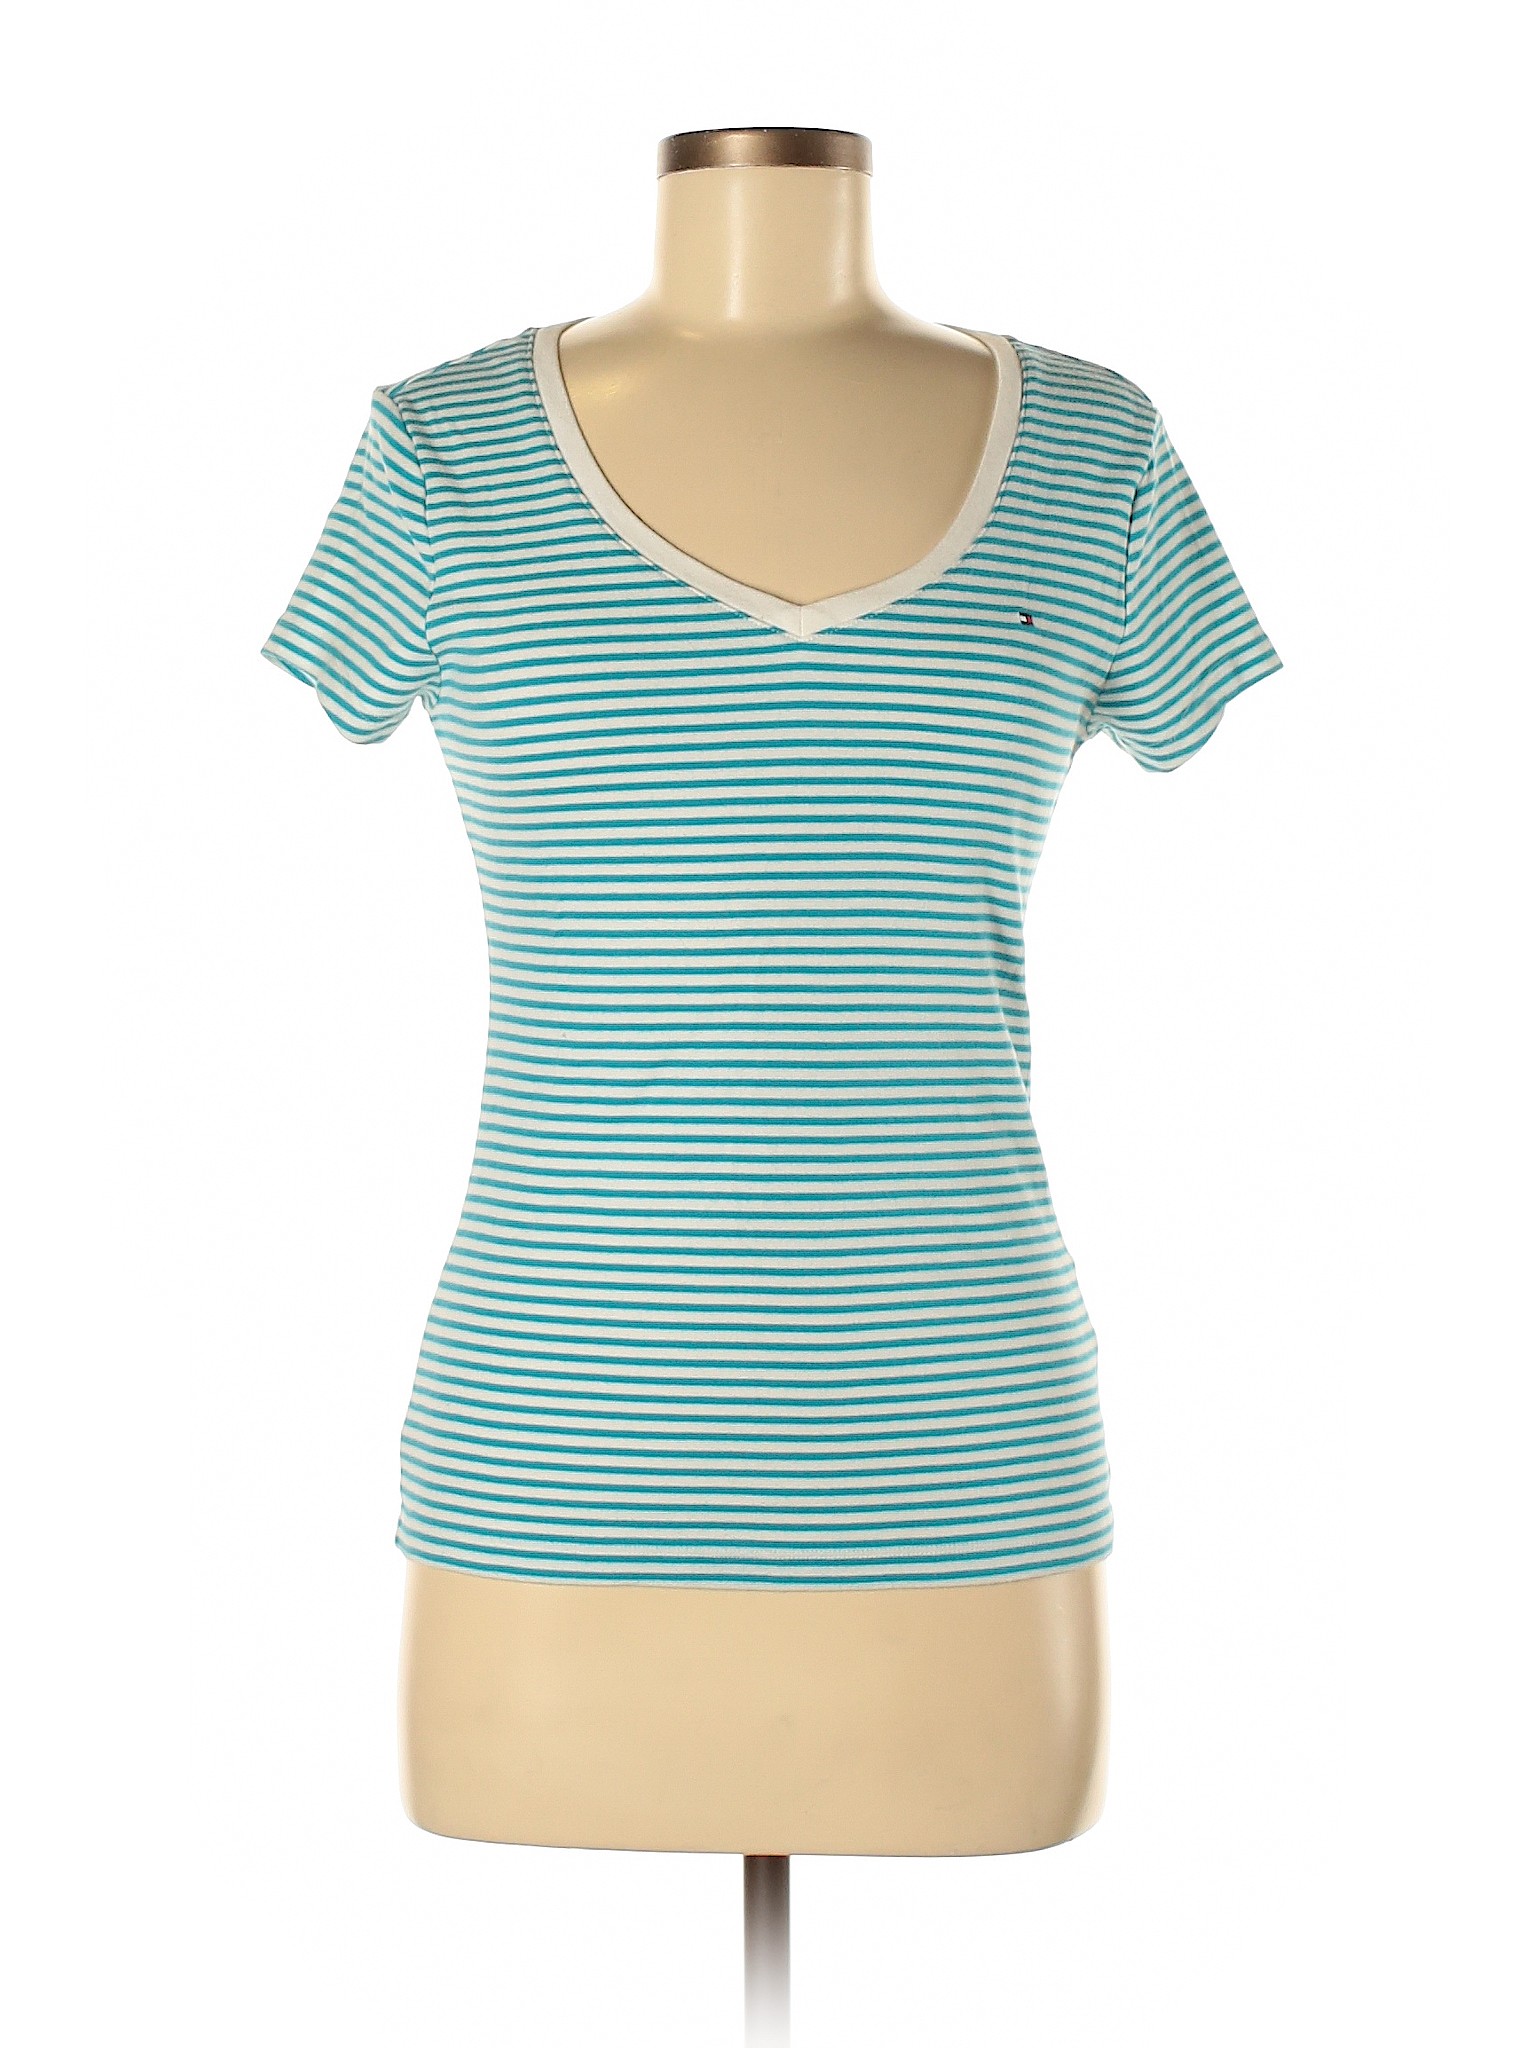 Tommy Hilfiger Women Green Short Sleeve T-Shirt M | eBay